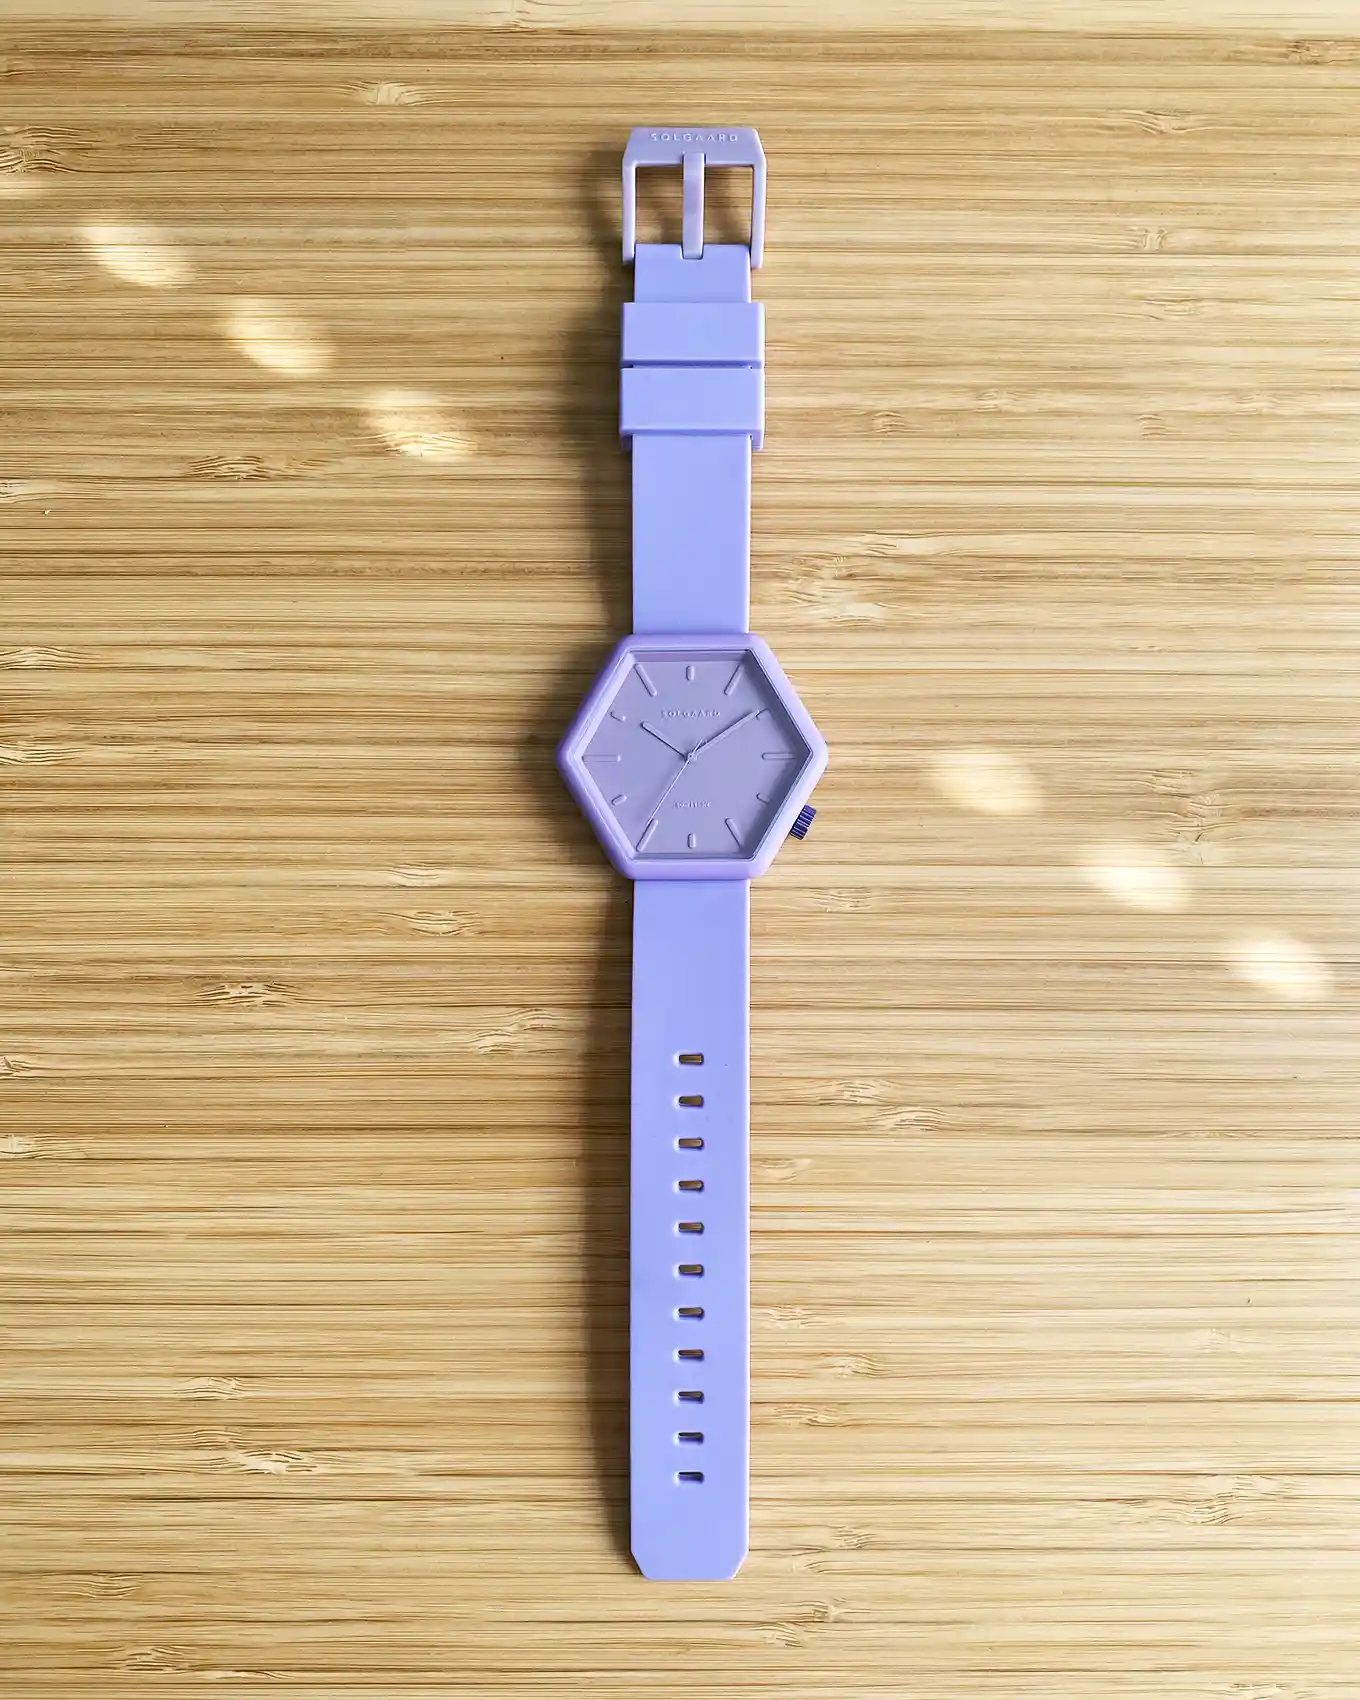 Minimalistisch zeshoekig horloge in een lila kleur, plat op een tafel